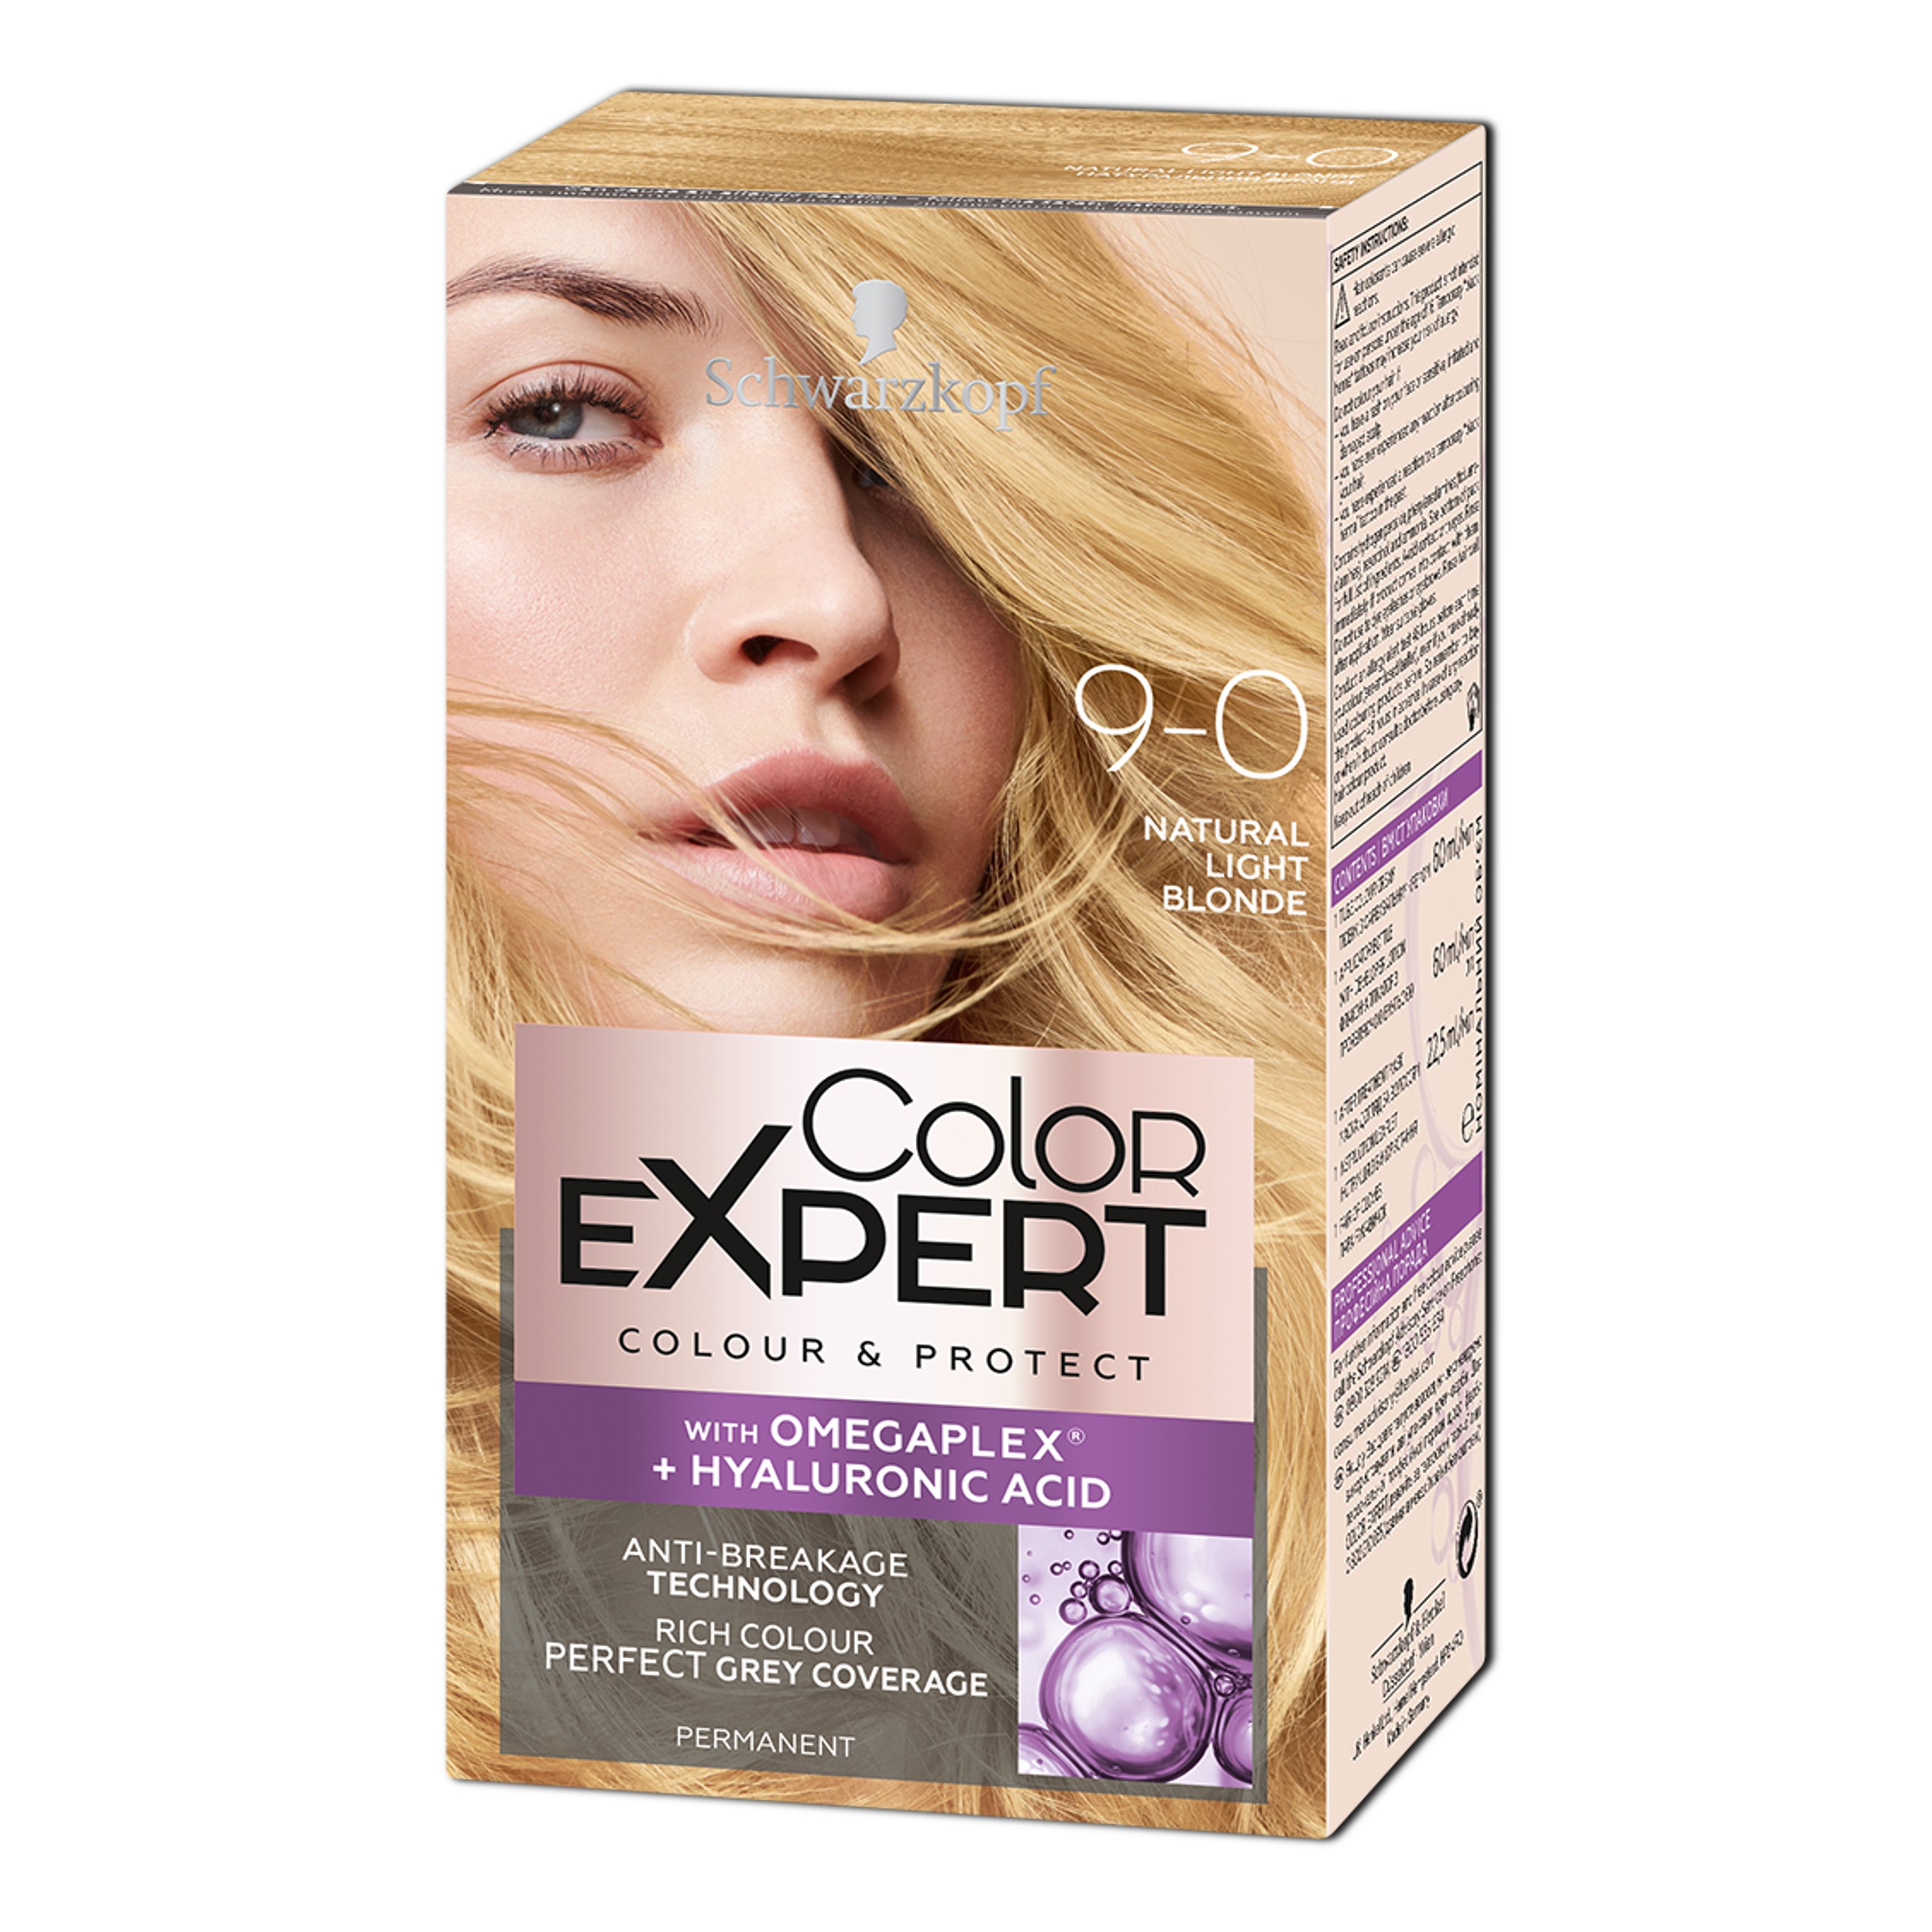 Крем-фарба для волосся Schwarzkopf Color Expert, з гіалуроновою кислотою, відтінок 9-0 (Натуральний Блонд), 142,5 мл - фото 1